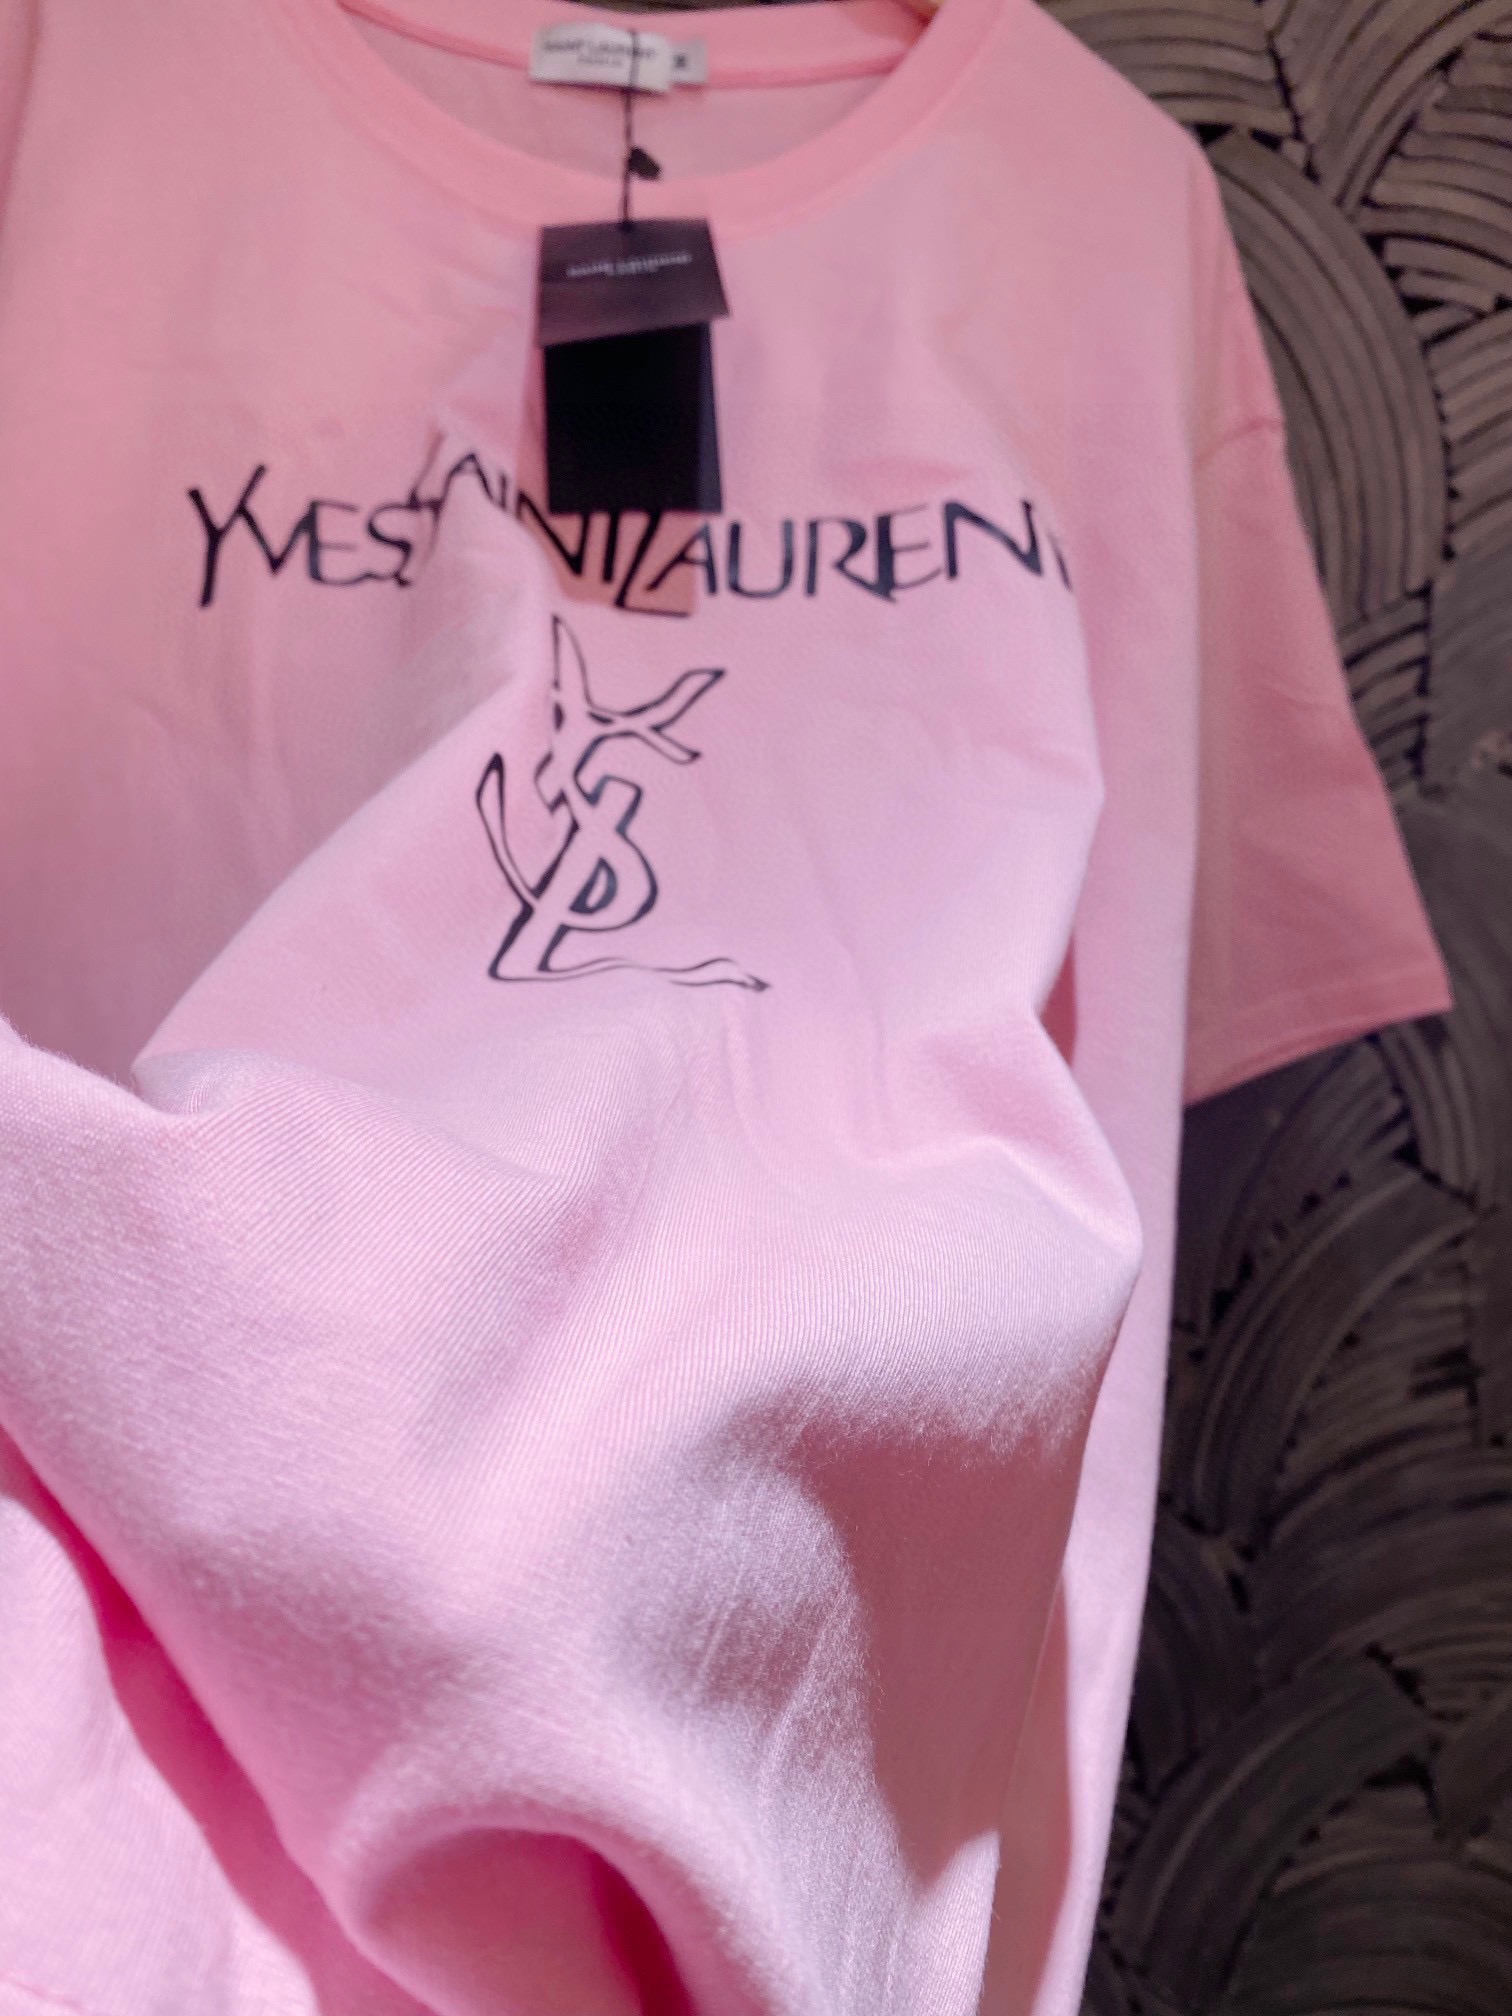 Yves Saint Laurent Odzież T-Shirt Różowy Unisex Bawełna Krótki rękaw